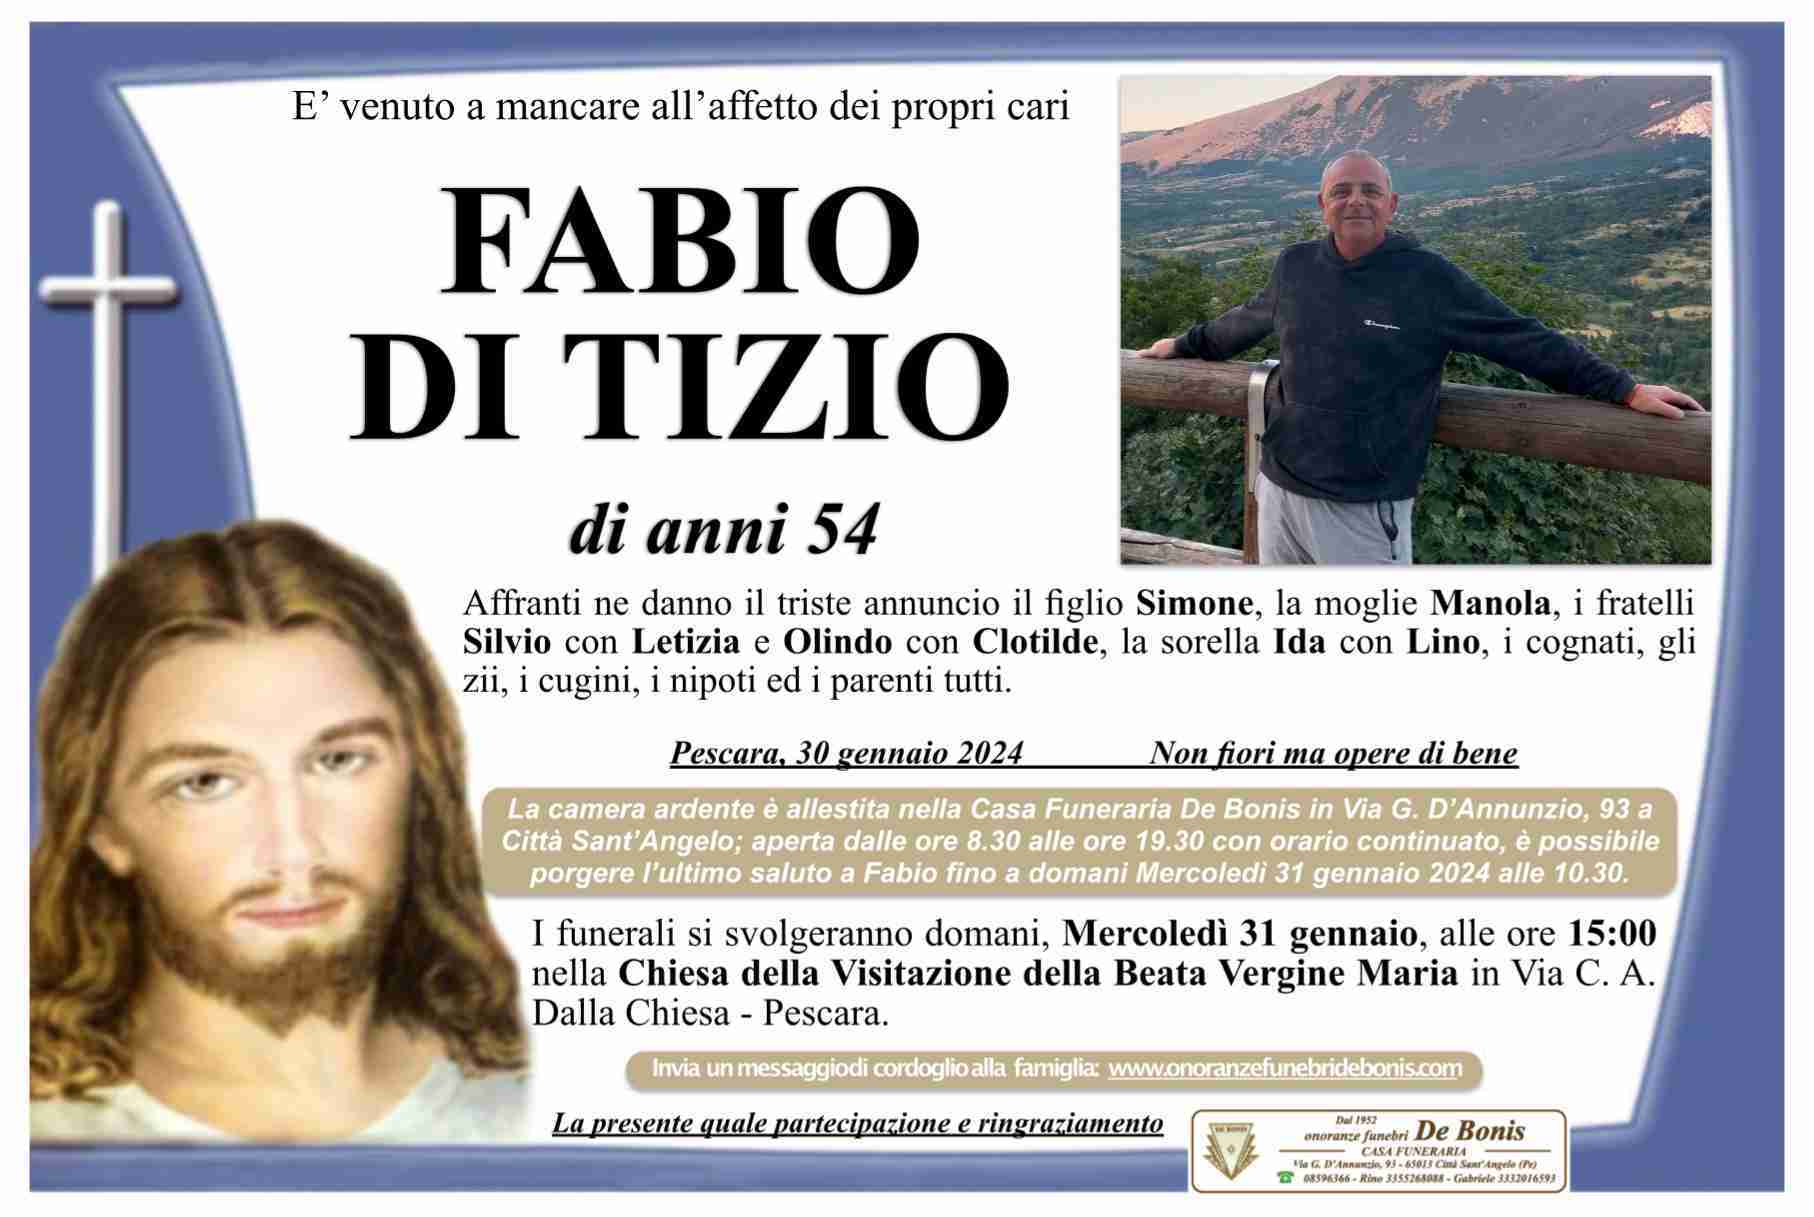 Fabio Di Tizio